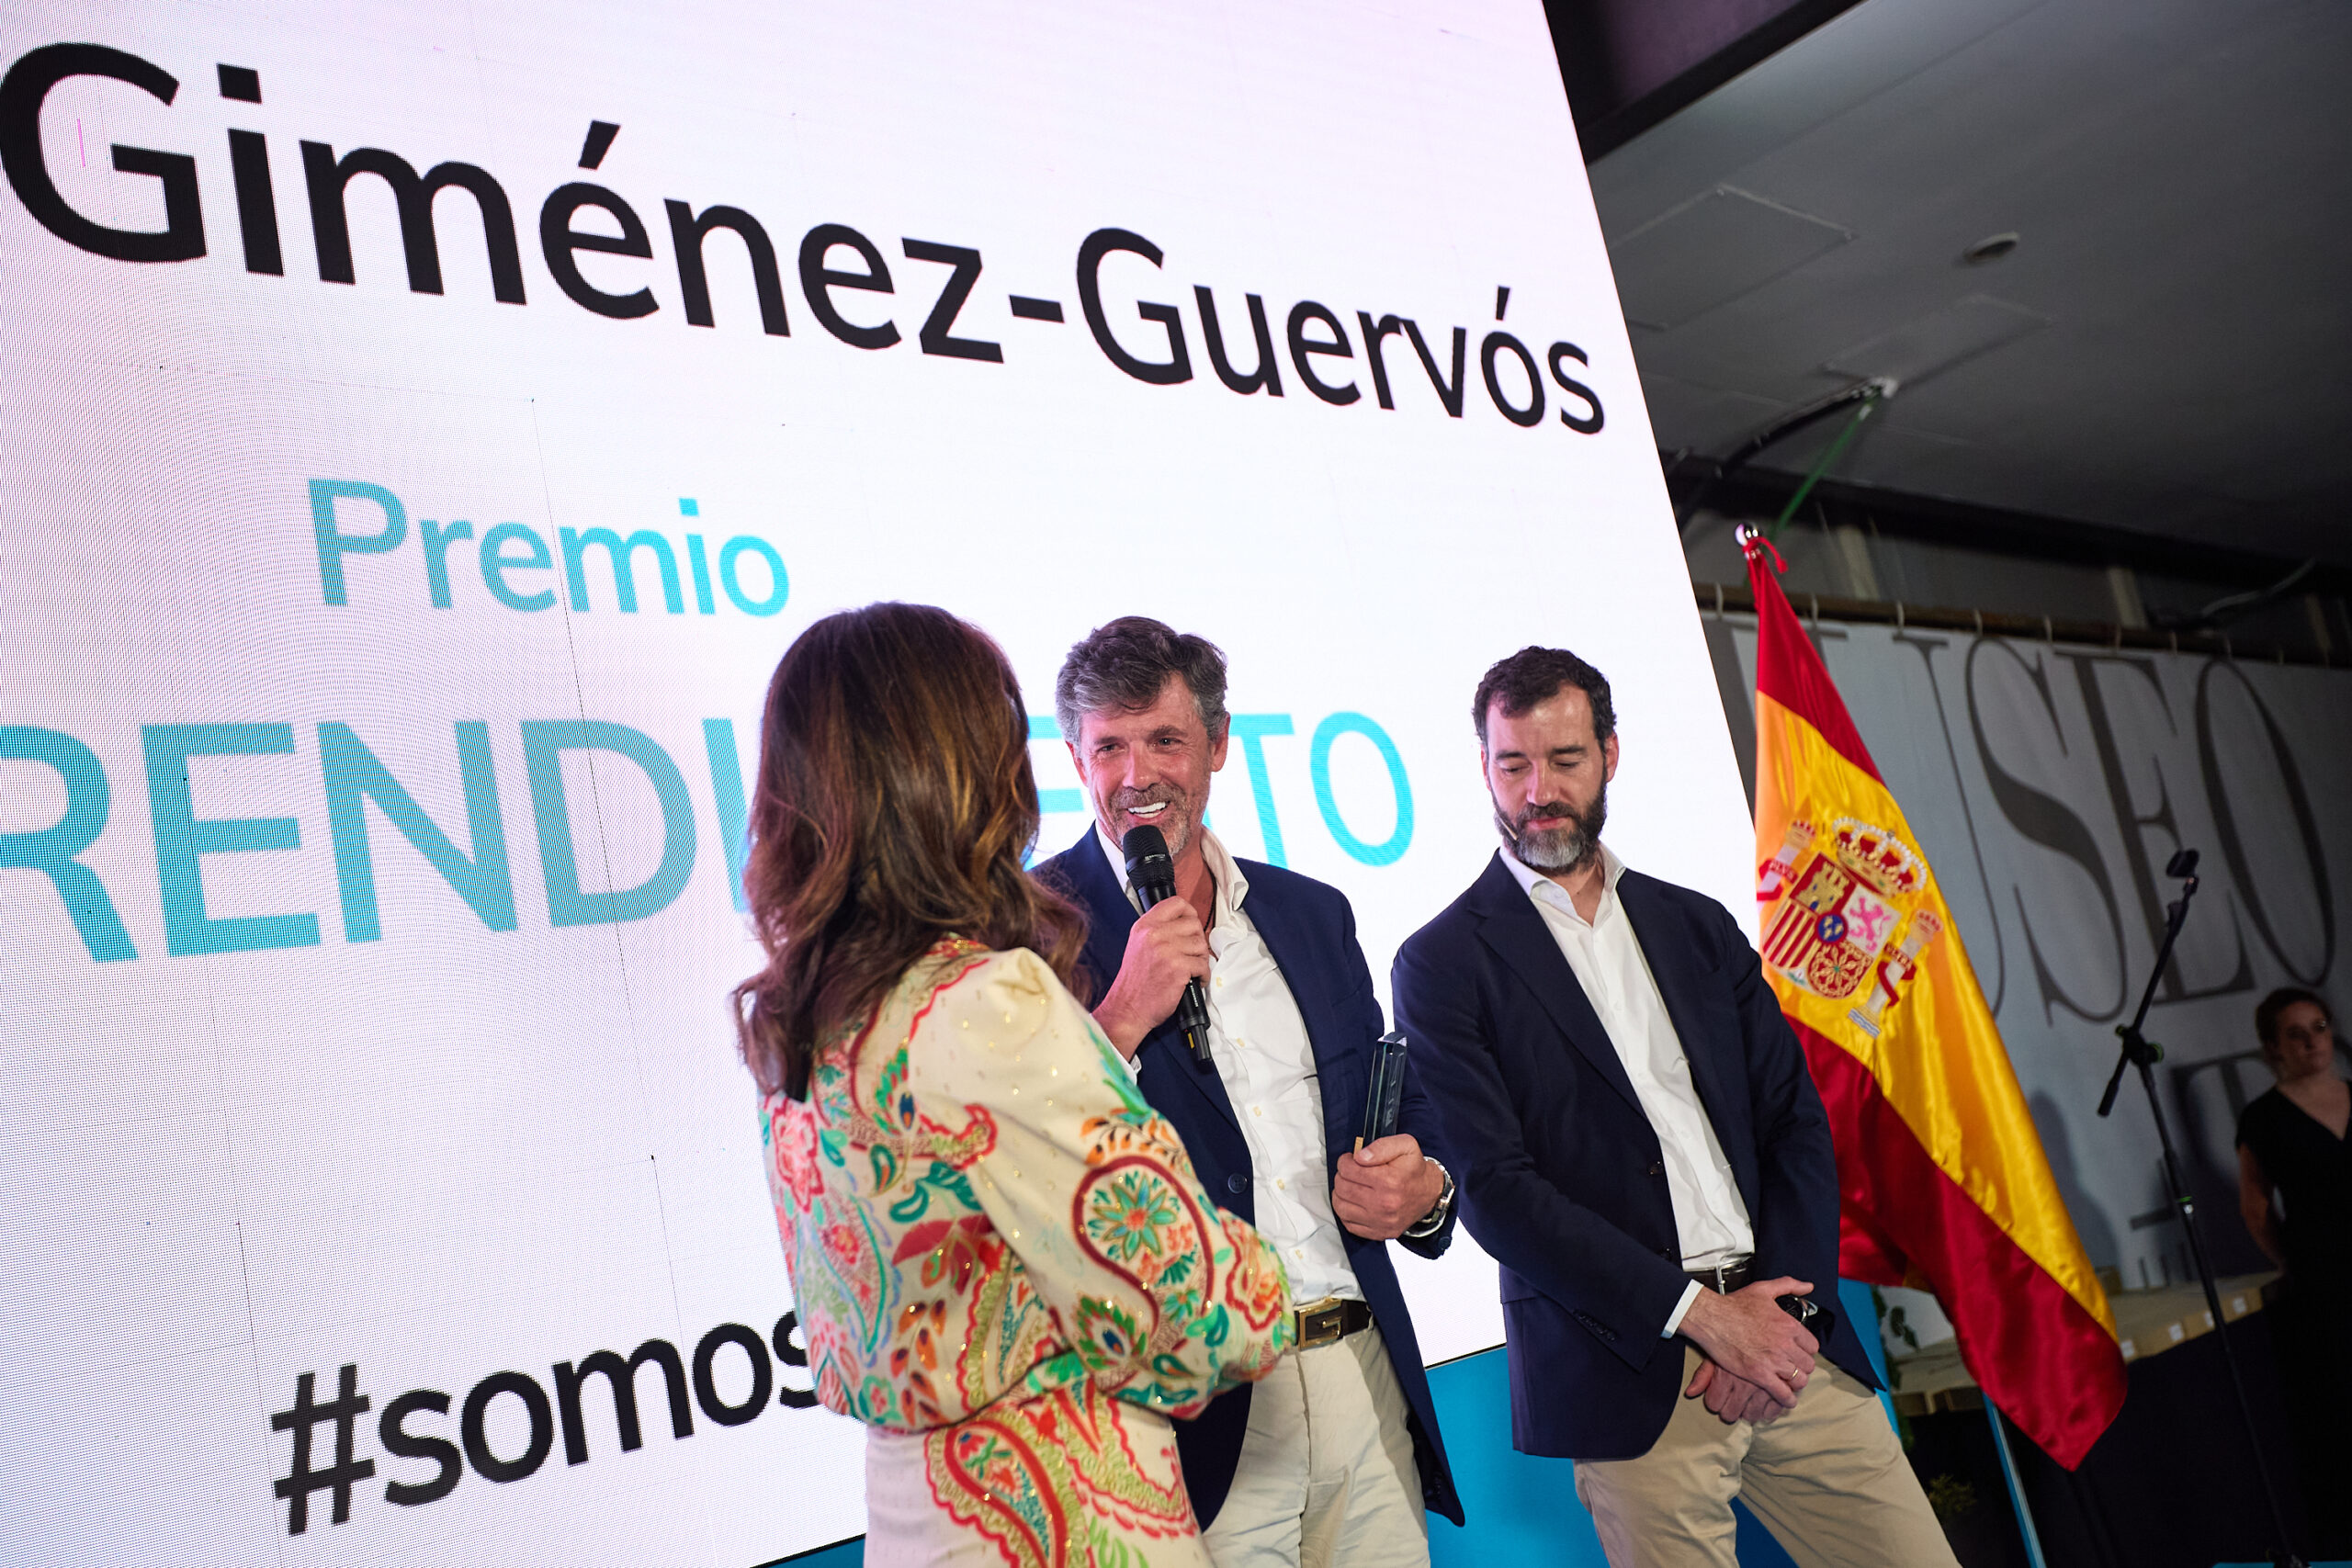 Fernando Giménez-Guervós, CEO of EccoFreight, winner of the IME Entrepreneurship Award.